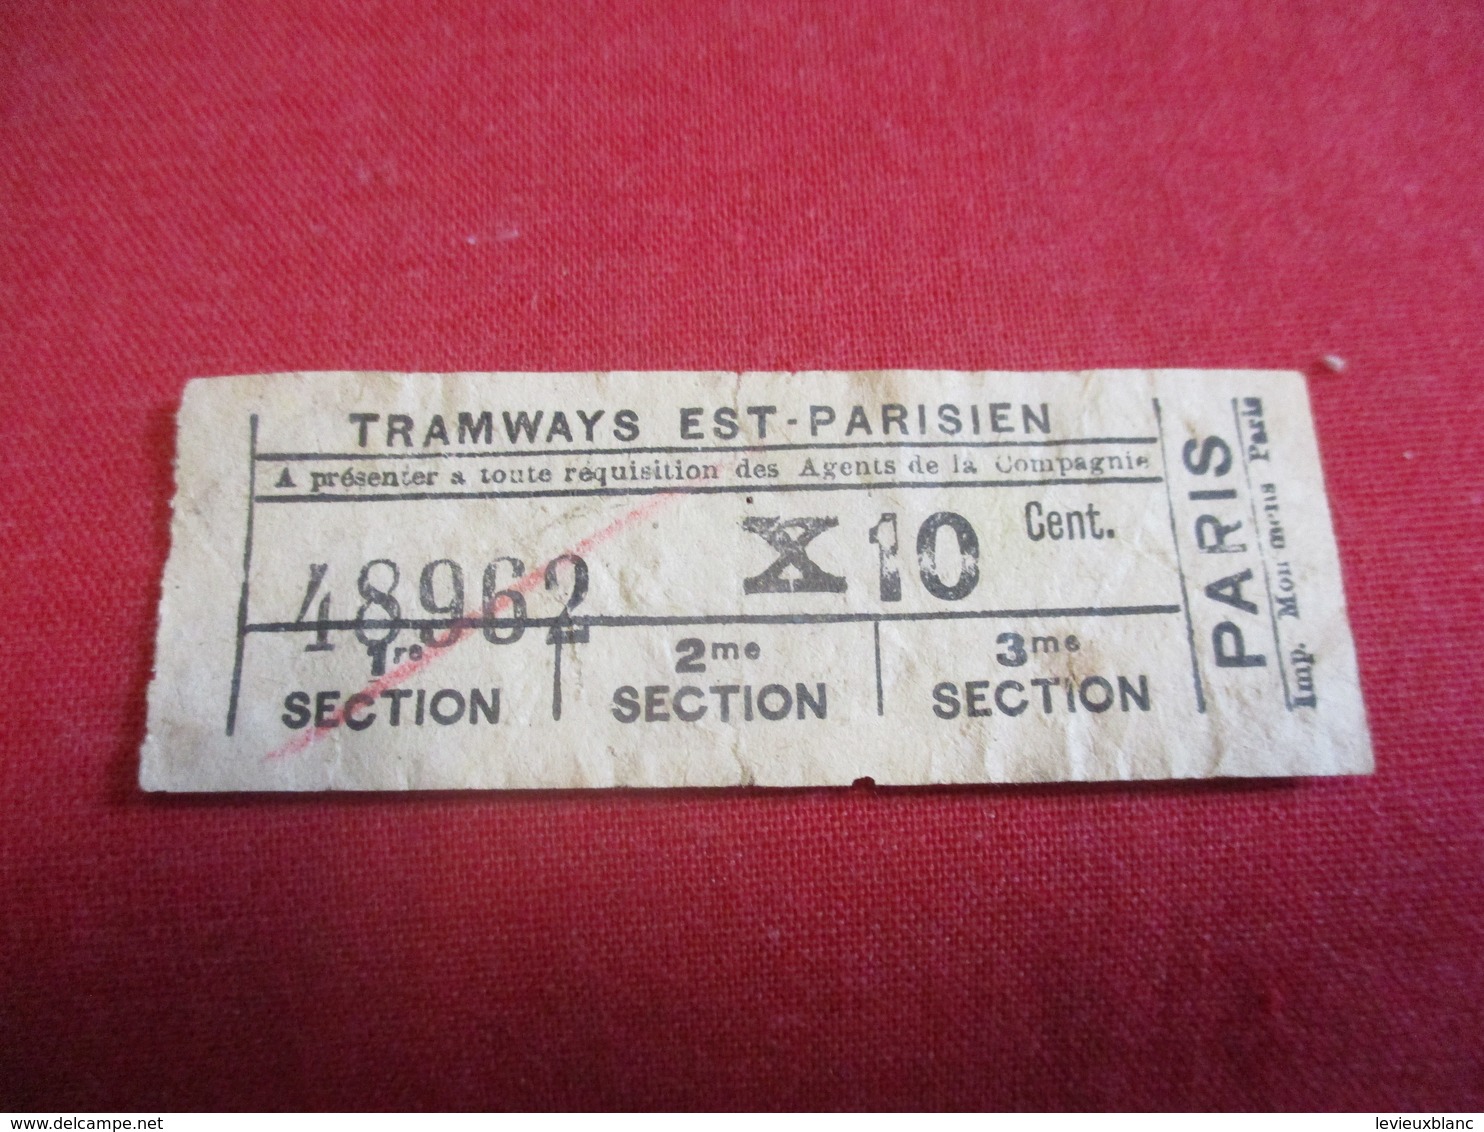 Tramway Ticket Ancien Usagé/TRAMWAYS EST-PARISIEN/ à Présenter/10 Cent /PARIS/ Mommens Paris//Vers 1900-1920   TCK123 - Europa